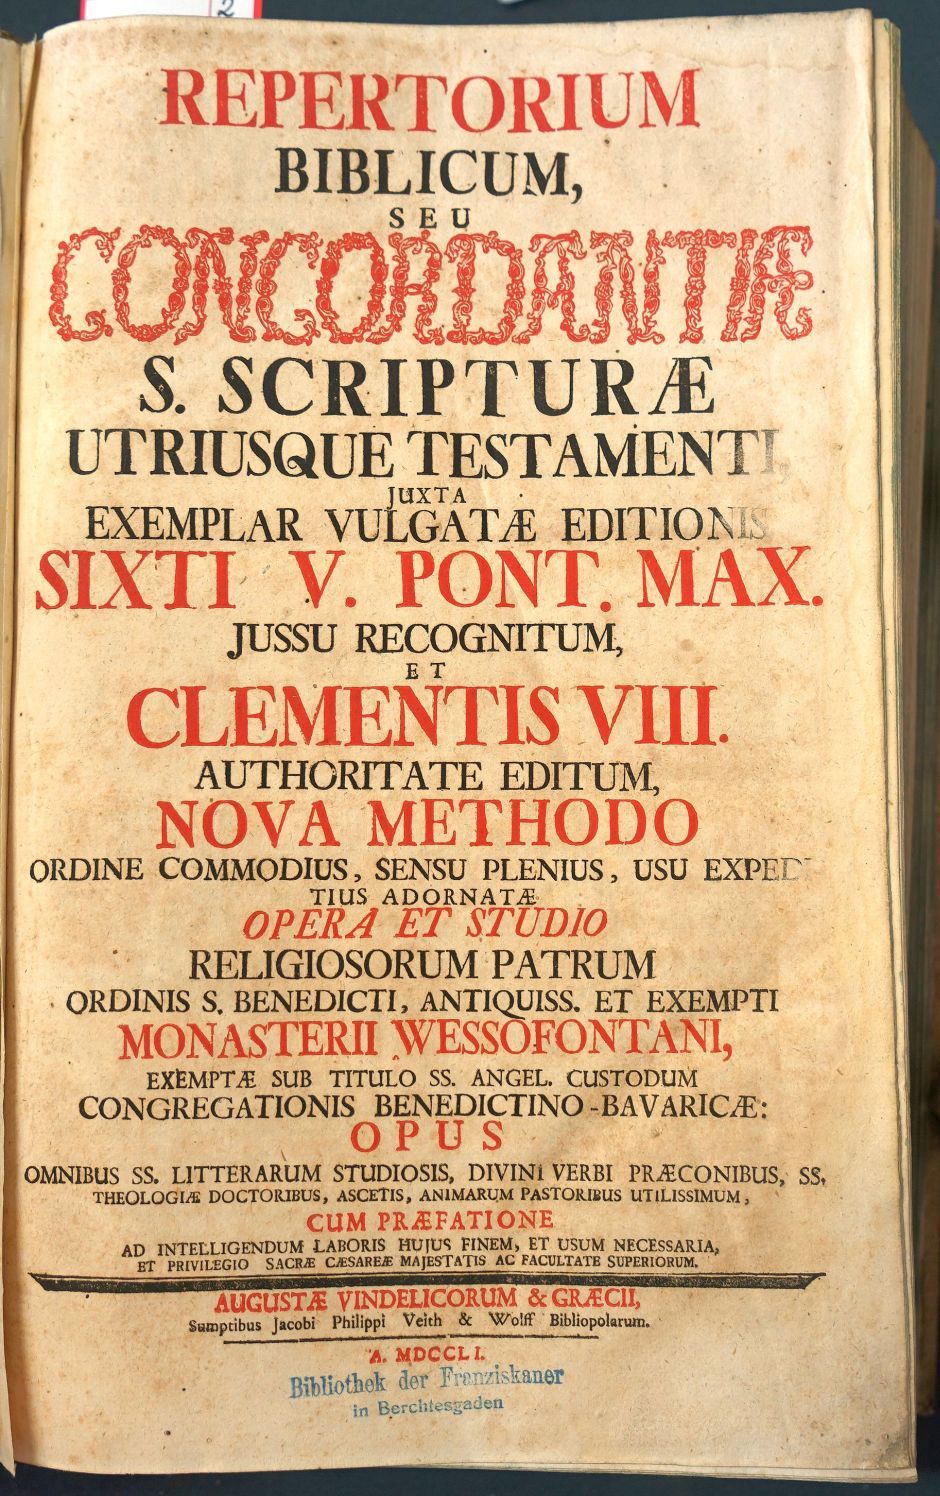 Lot 1242, Auction  115, Repertorium Biblicum, Repertorium Biblicum